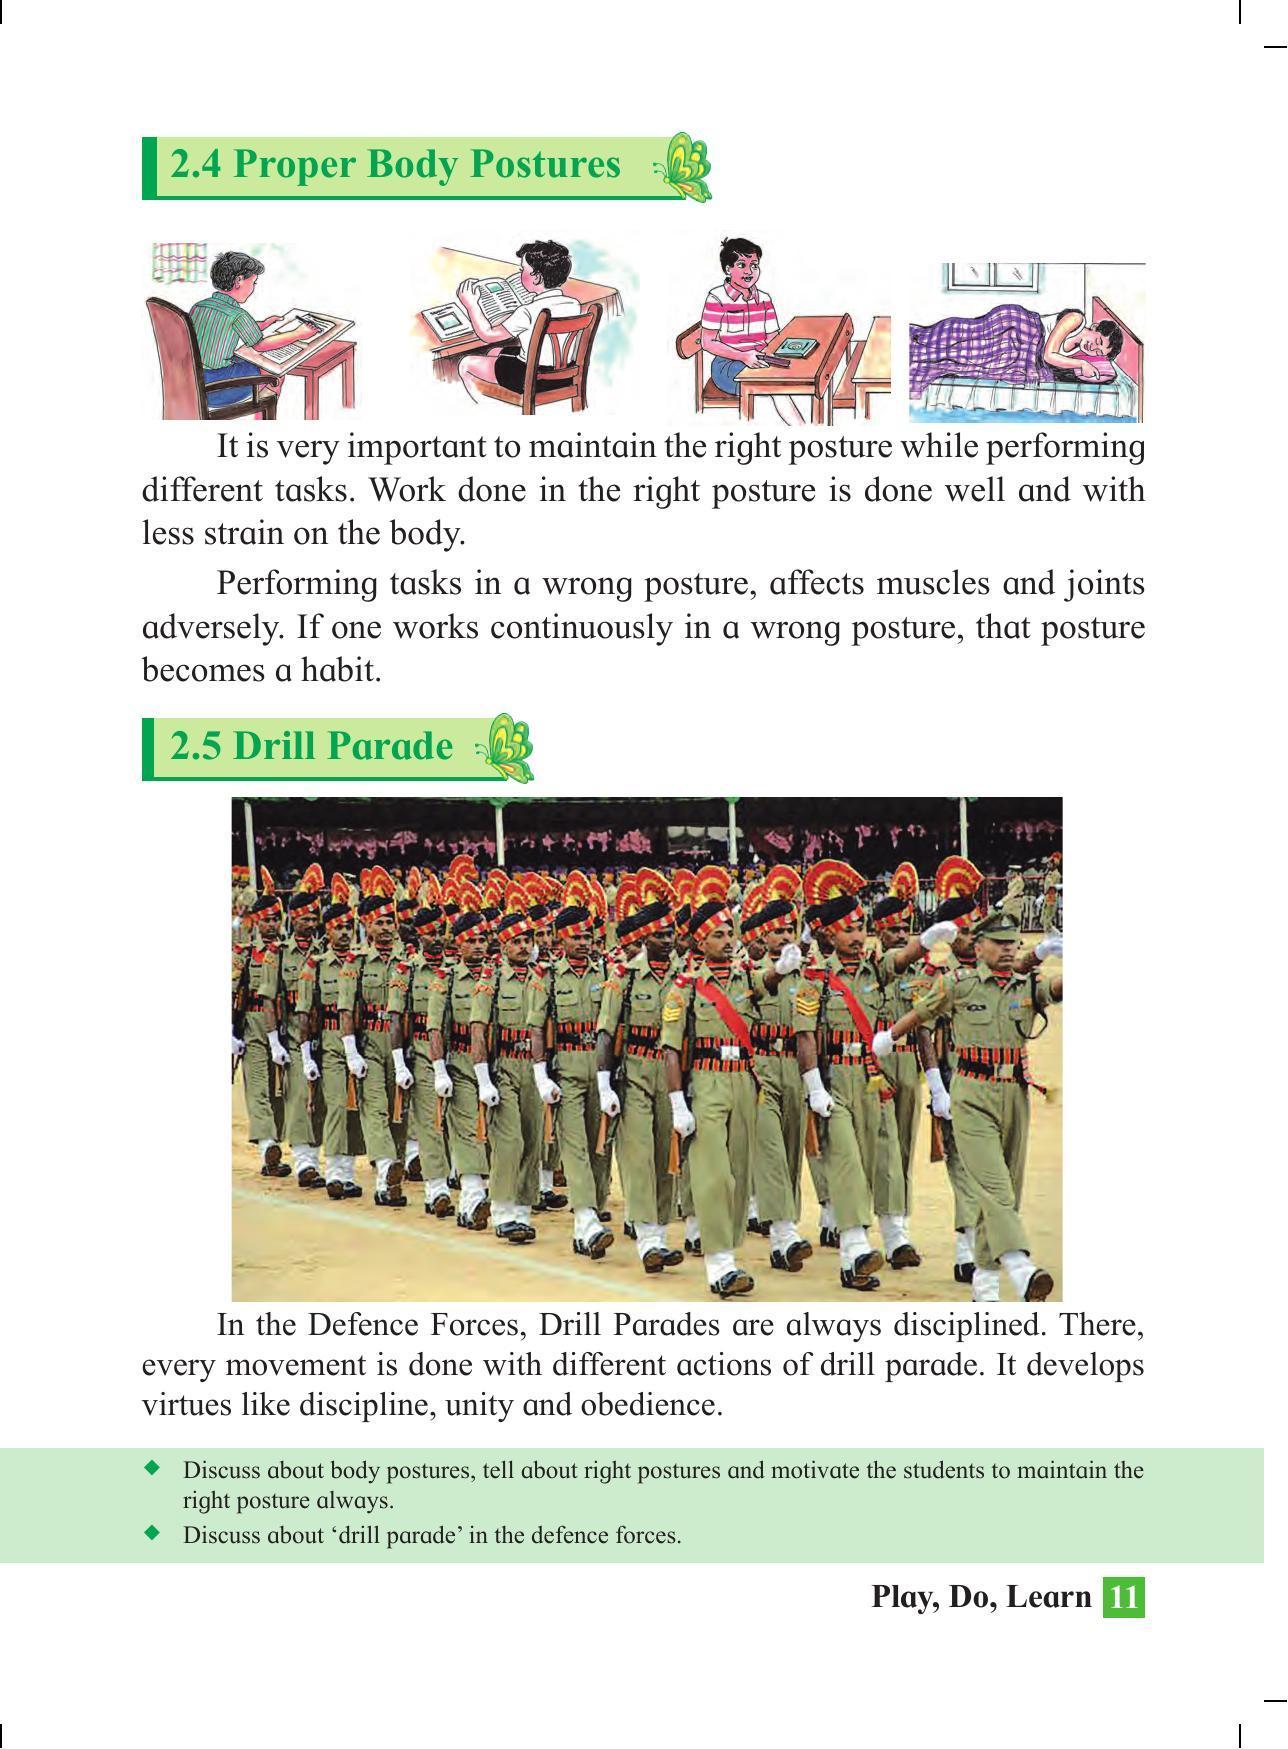 Maharashtra Board Class 4 Play Do Learn (English Medium) Textbook - Page 20